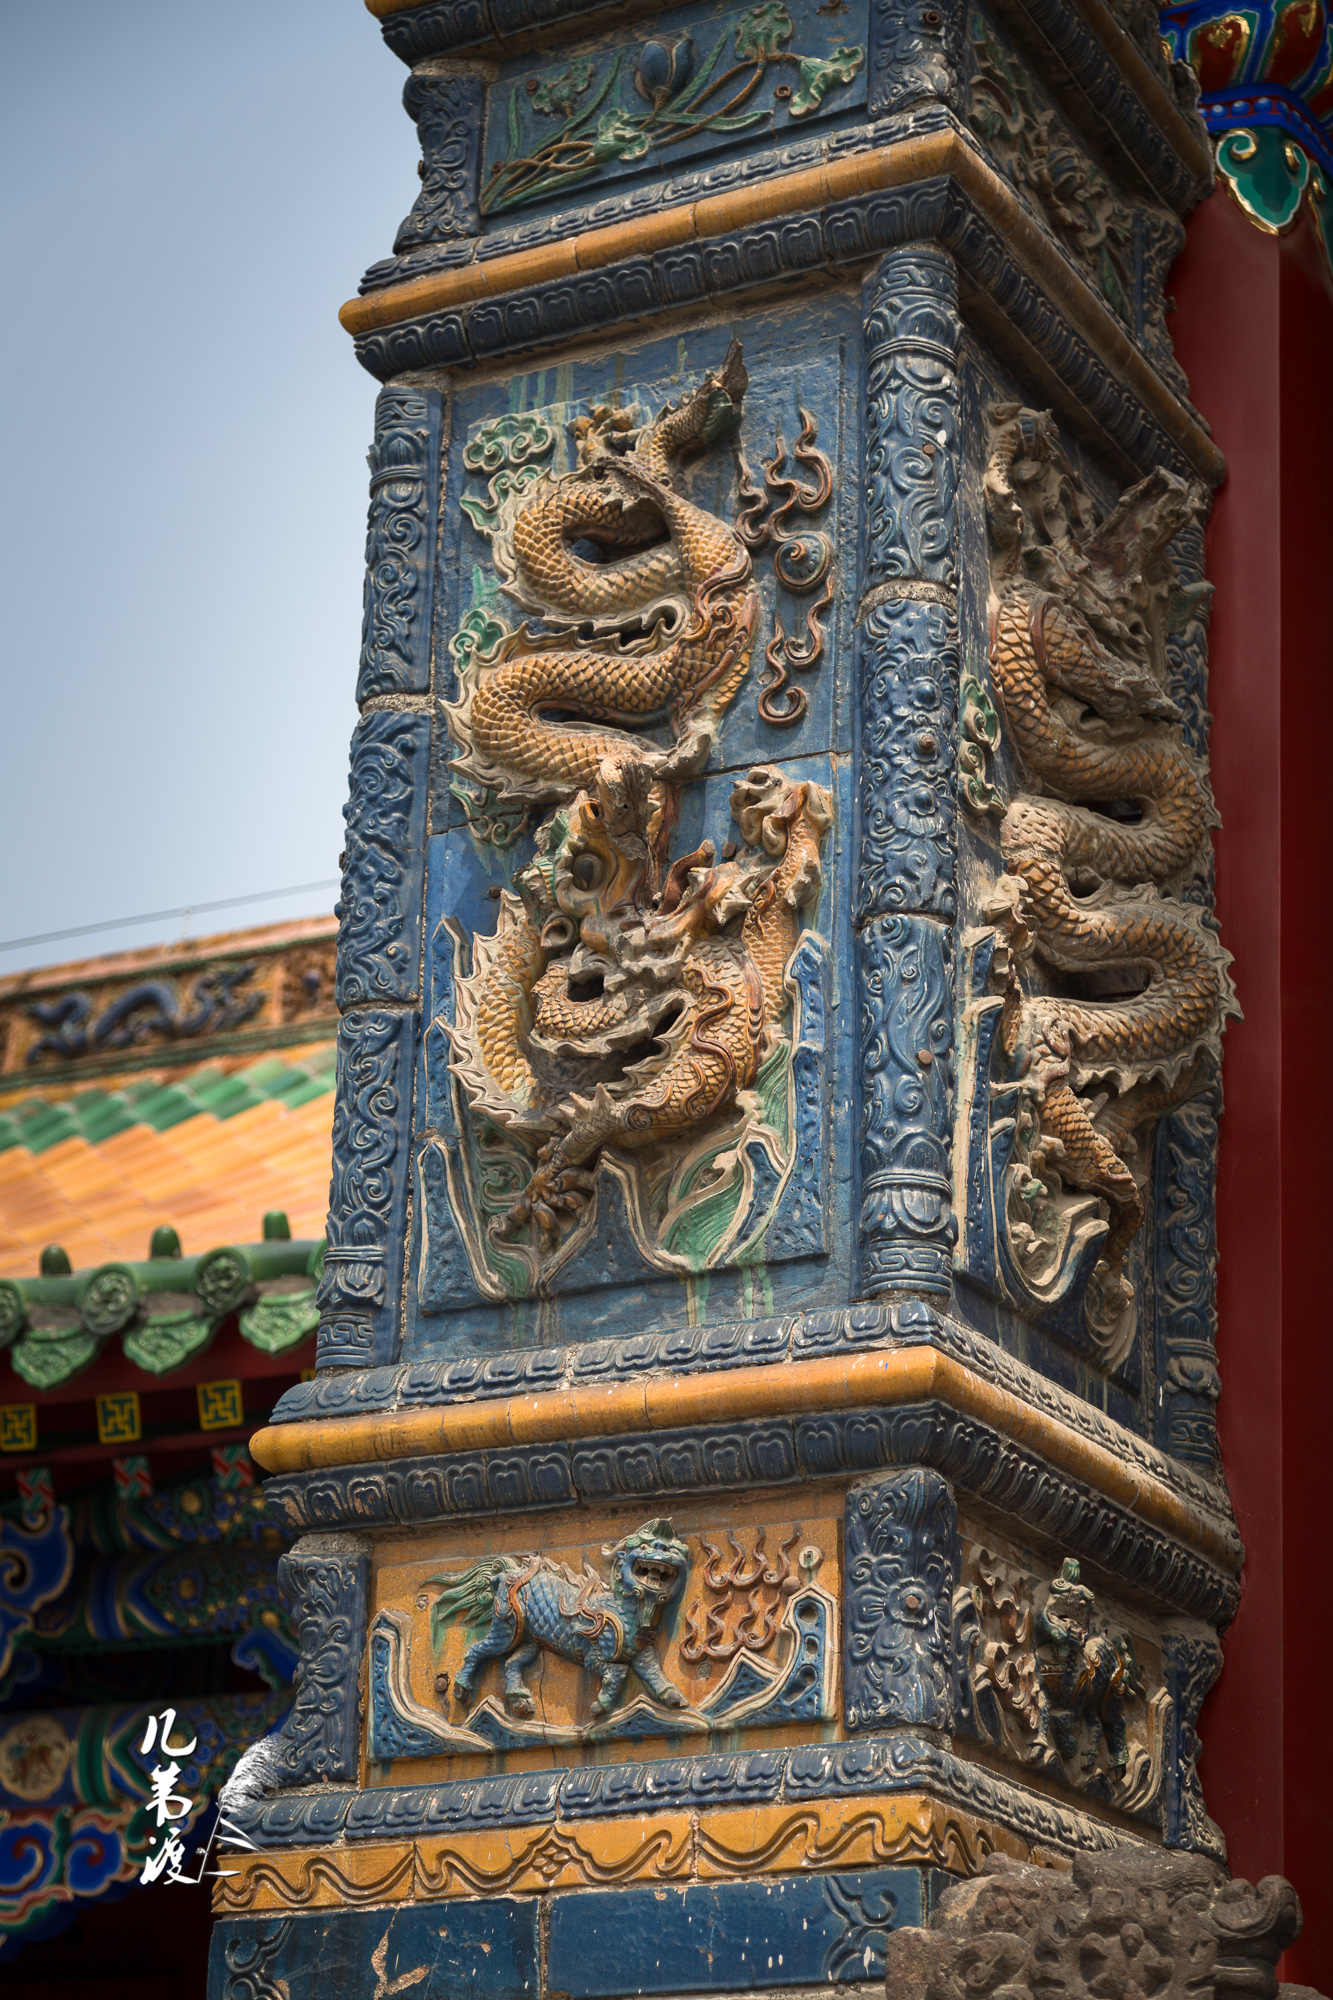 5 北京故宫御花园琉璃影壁鸳鸯戏莲盒子-传统艺术-图片